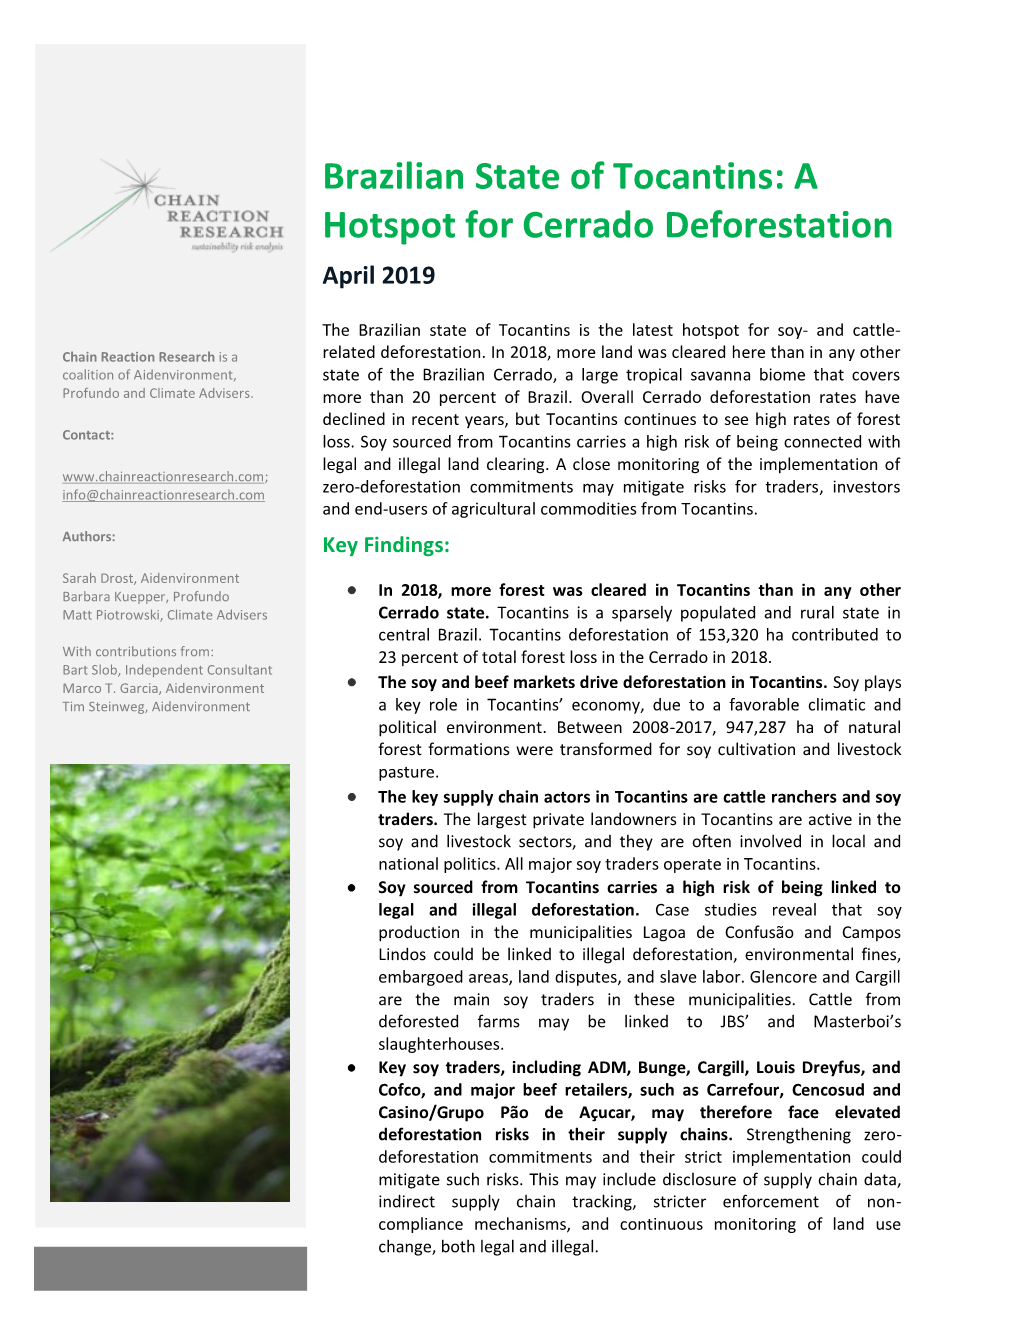 Tocantins: a Hotspot for Cerrado Deforestation April 2019